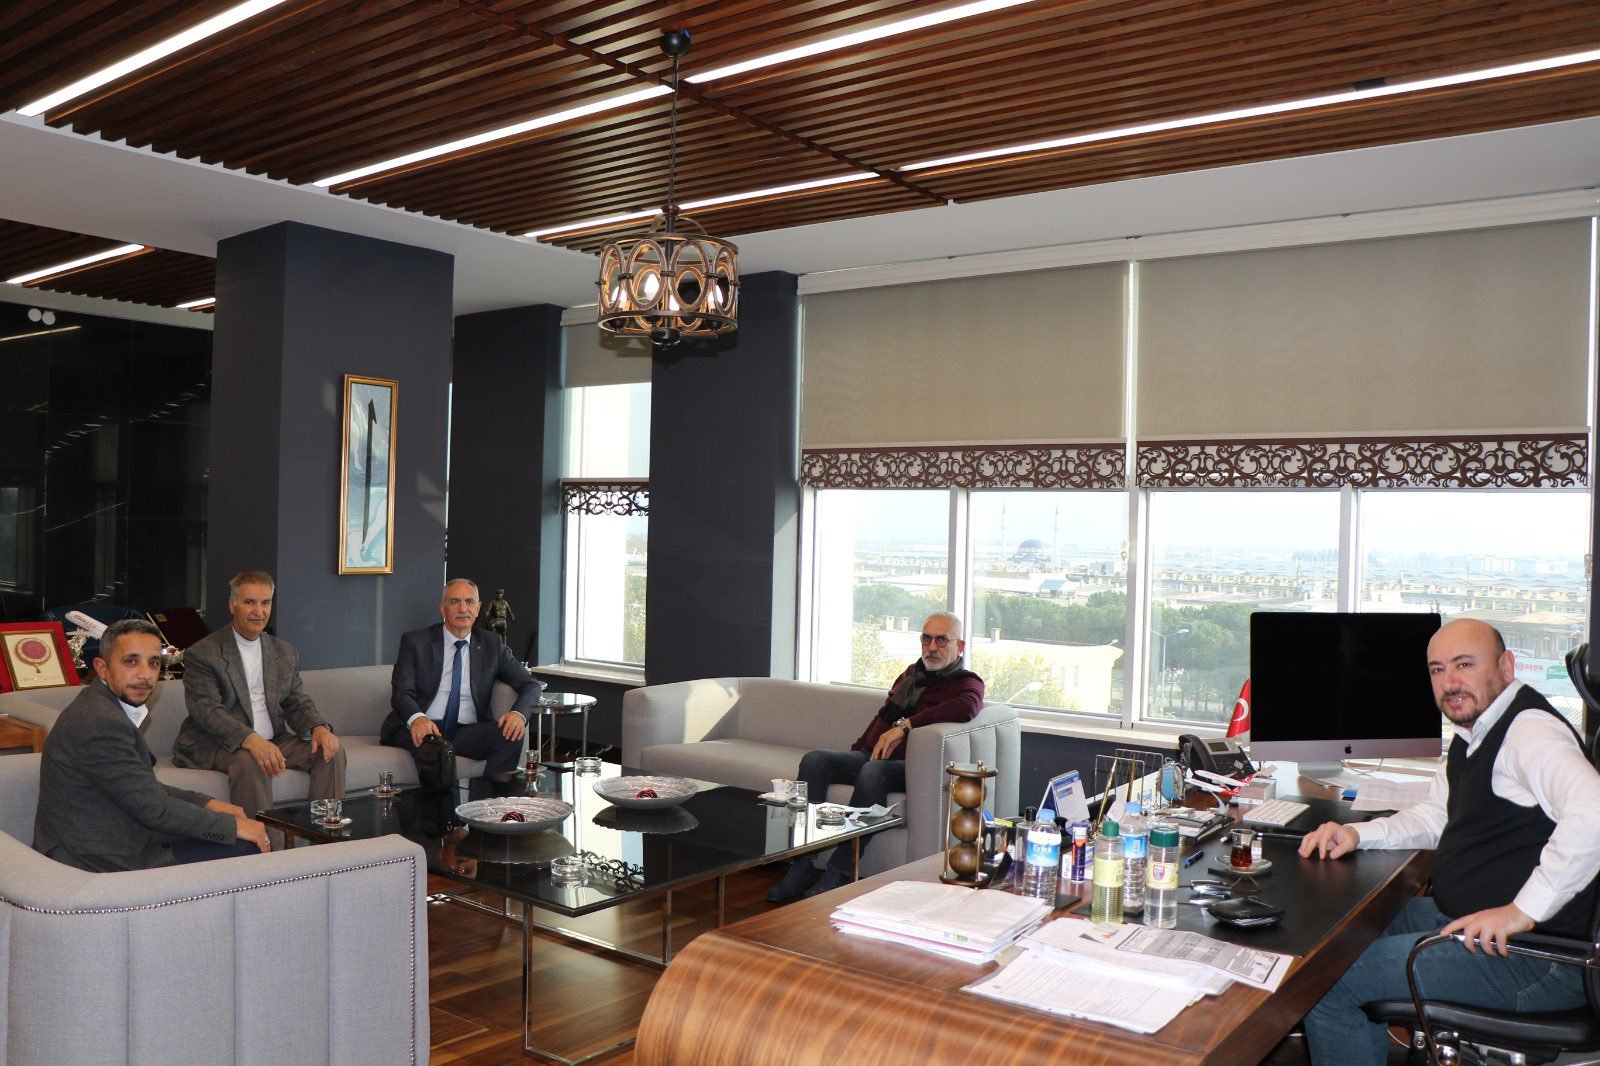 MHP İl Yönetim Kurulu Üyeleri ve Efeler İlçe Başkanı Ahmet BASKIN, TOBB Yönetim Kurulu Üyesi ve Odamız Başkanı Hakan ÜLKEN’i makamında ziyaret ettiler.